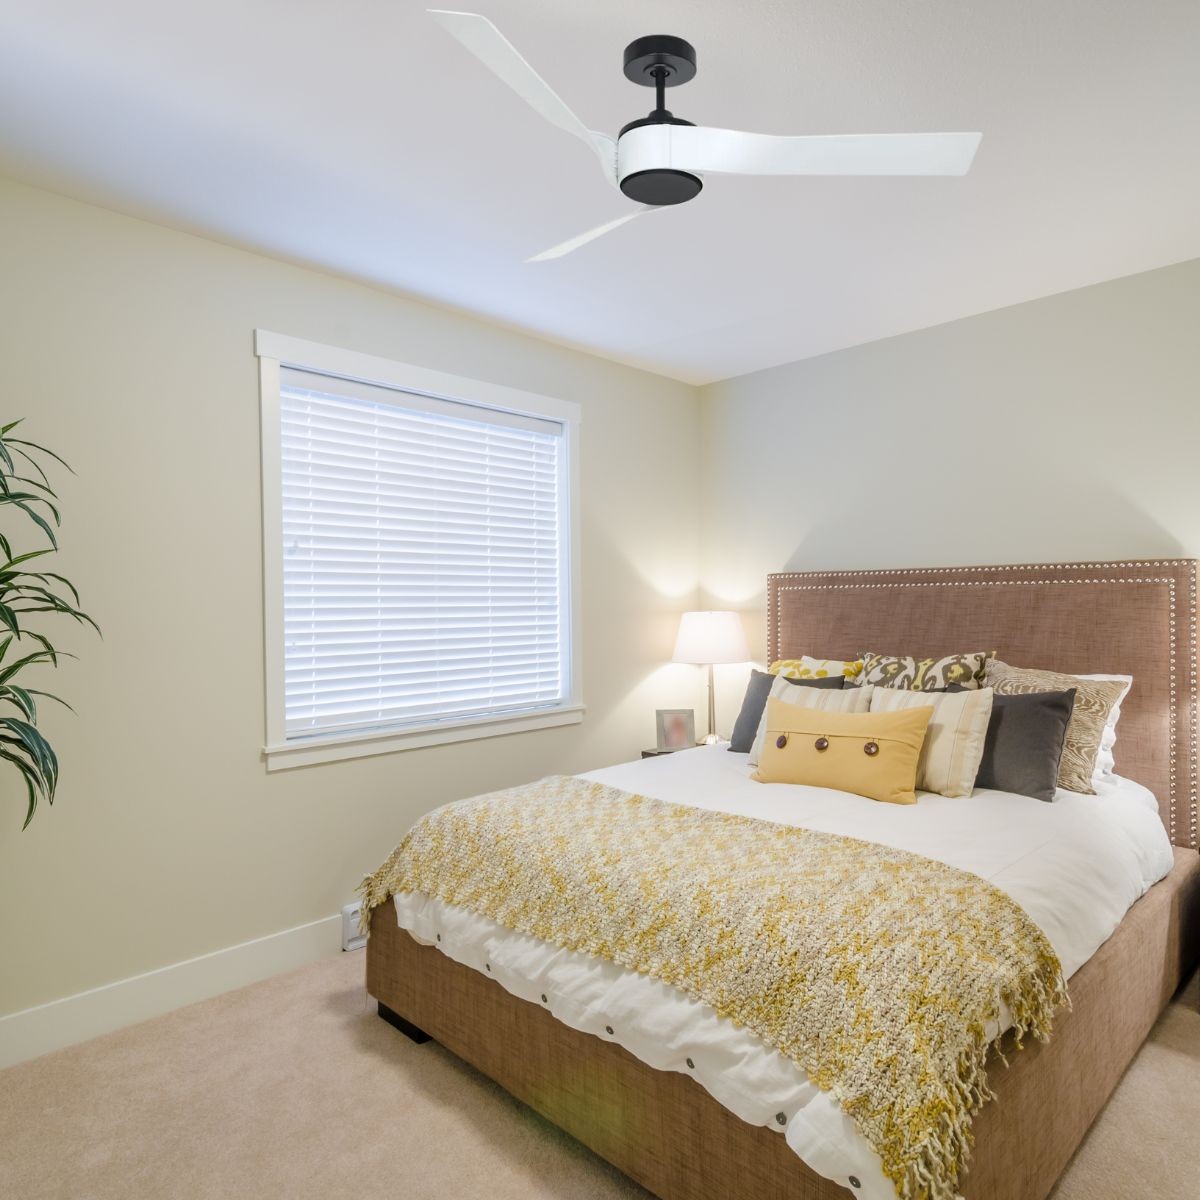 Titanium de casafan un ventilateur moderne, ultra silencieux, boitier  blanc, pales hêtre ou érable , faible consommation.